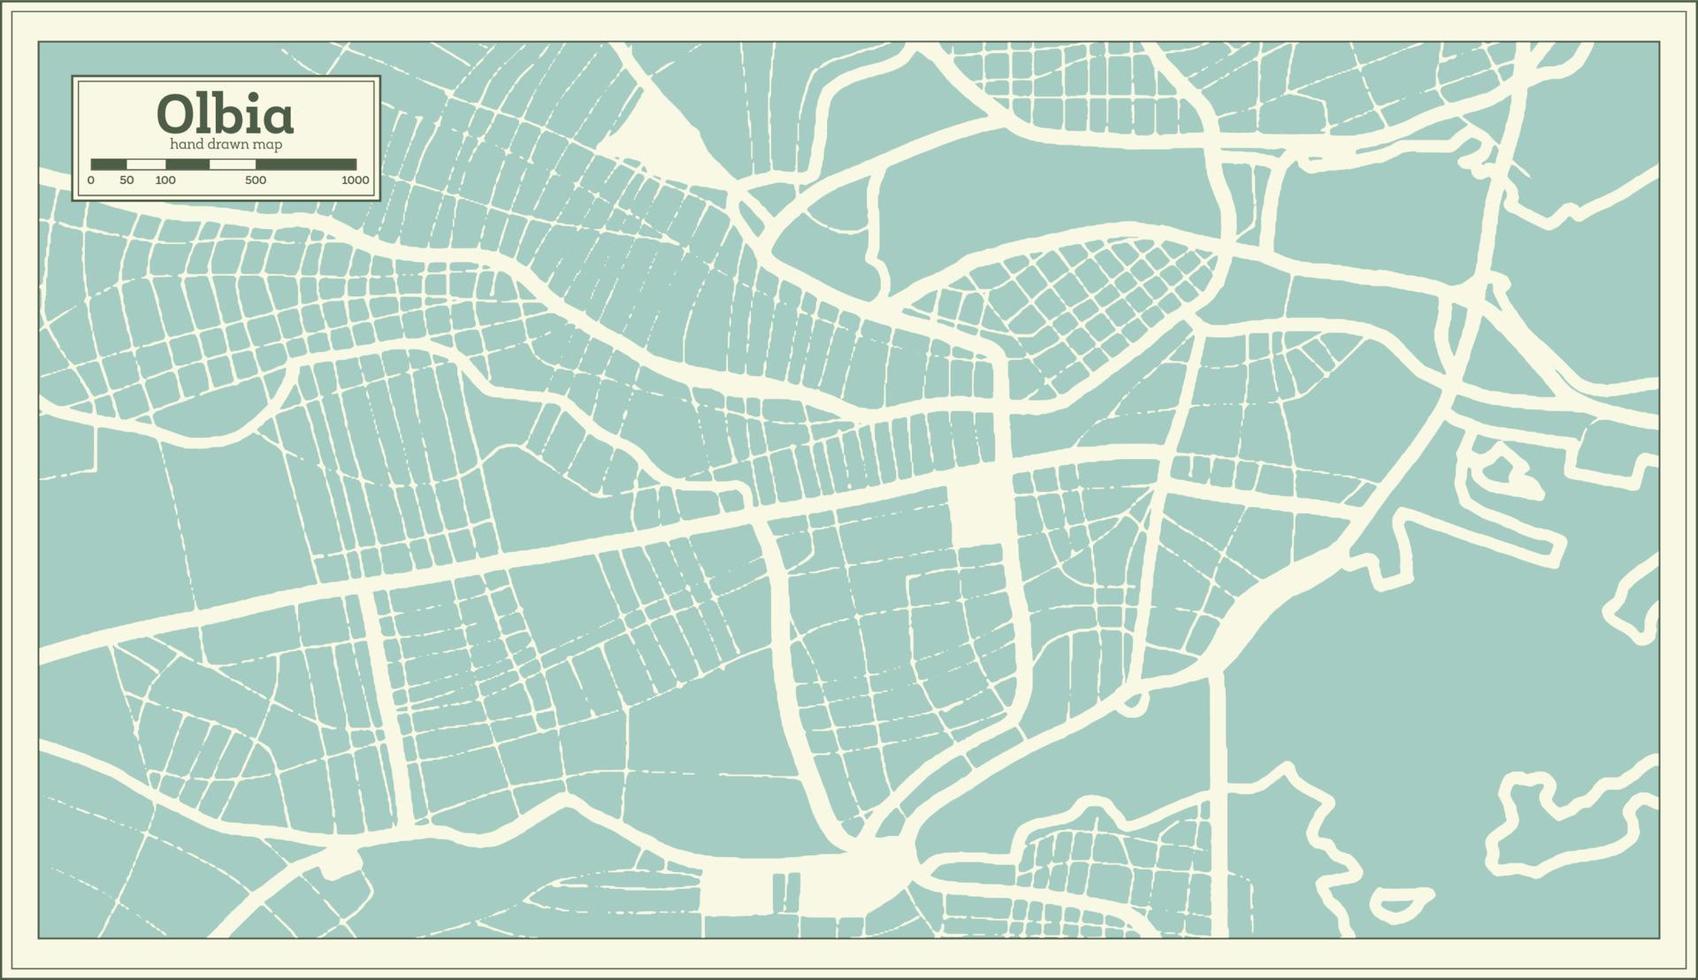 plan de la ville d'olbia italie dans un style rétro. carte muette. vecteur